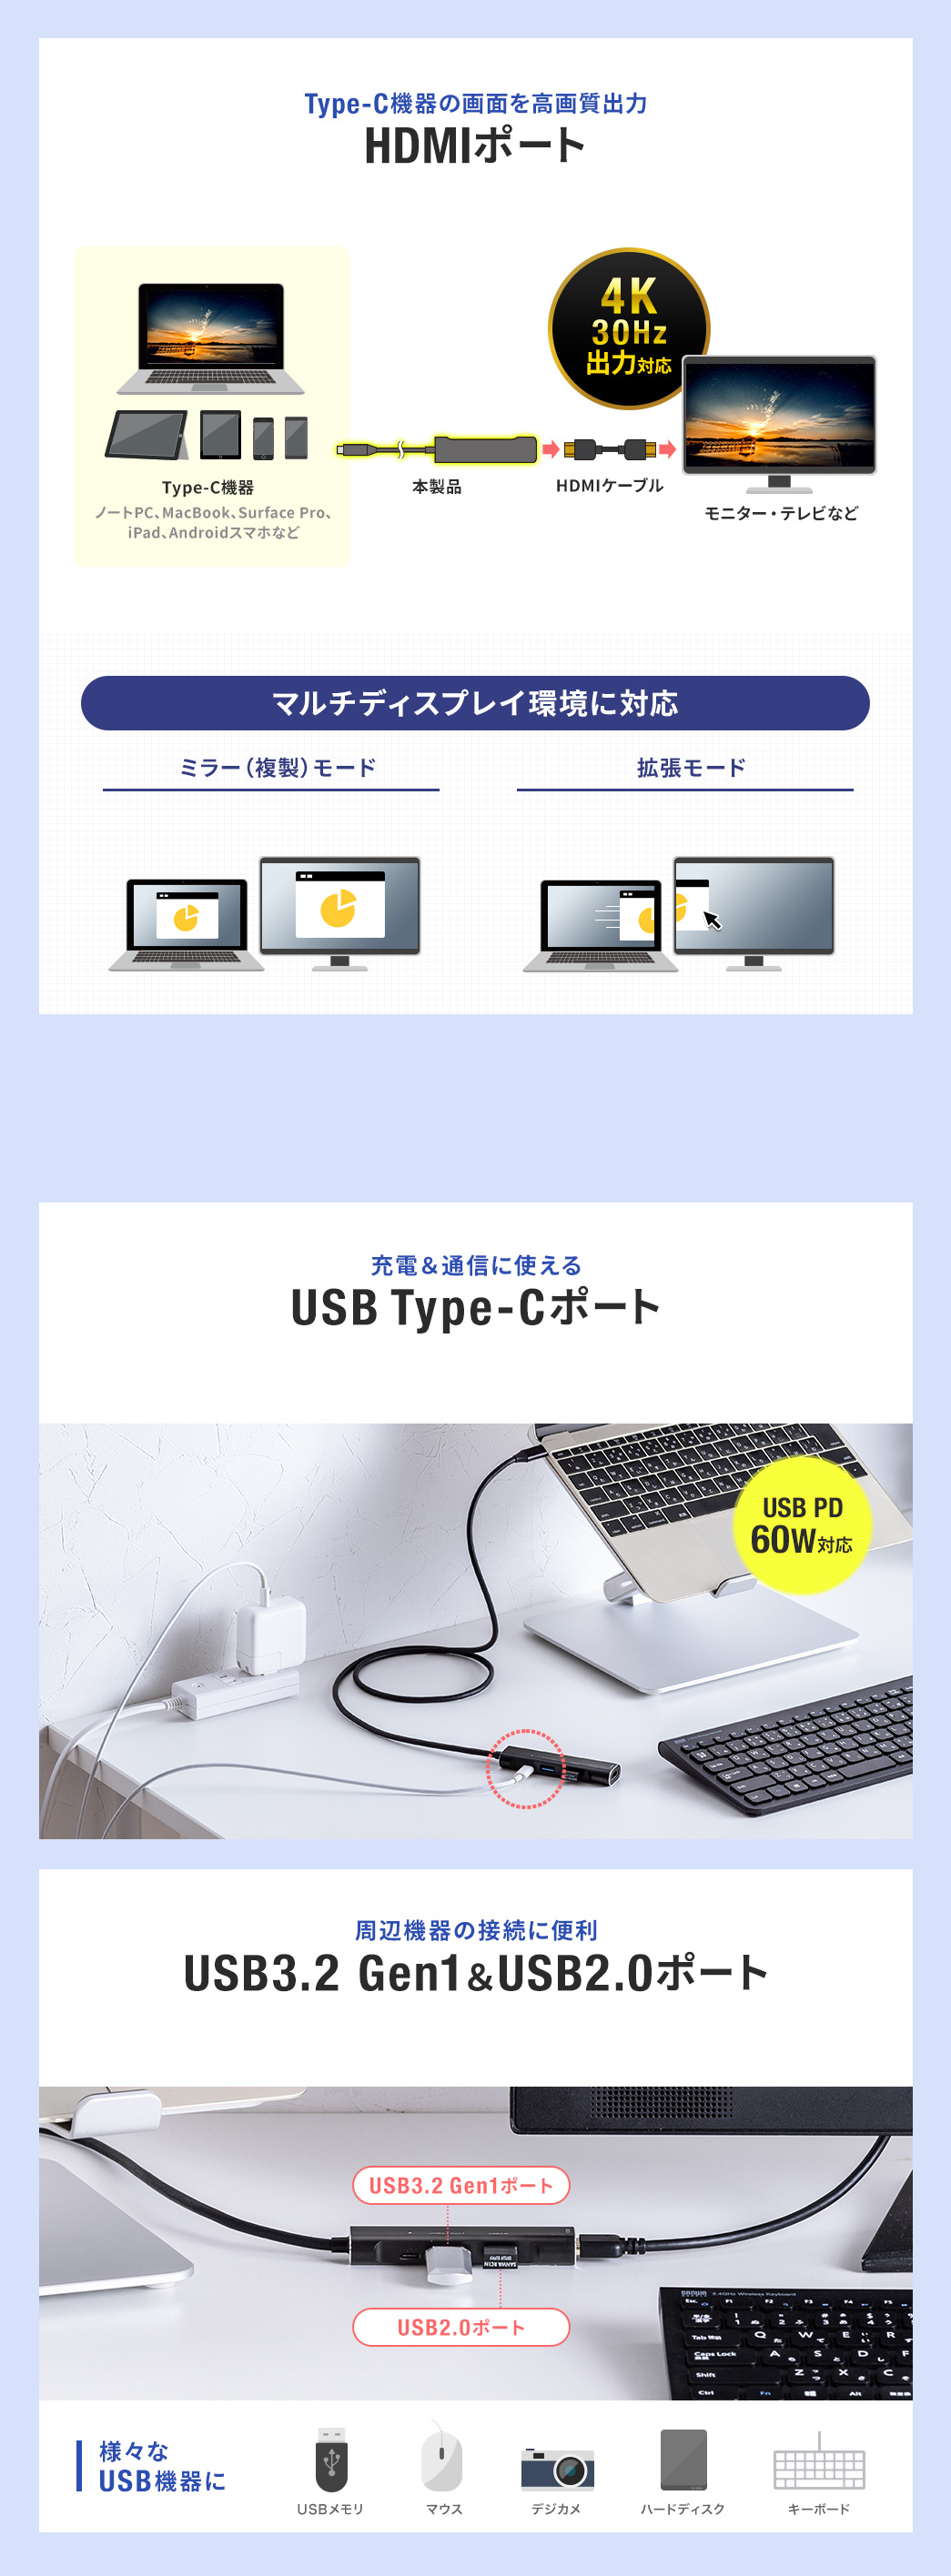 Type-C@̉ʂ掿oHDMI|[g [dʐMɎgUSB Type-C|[g Ӌ@̐ڑɕ֗USB3.2 Gen1&USB2.0|[g